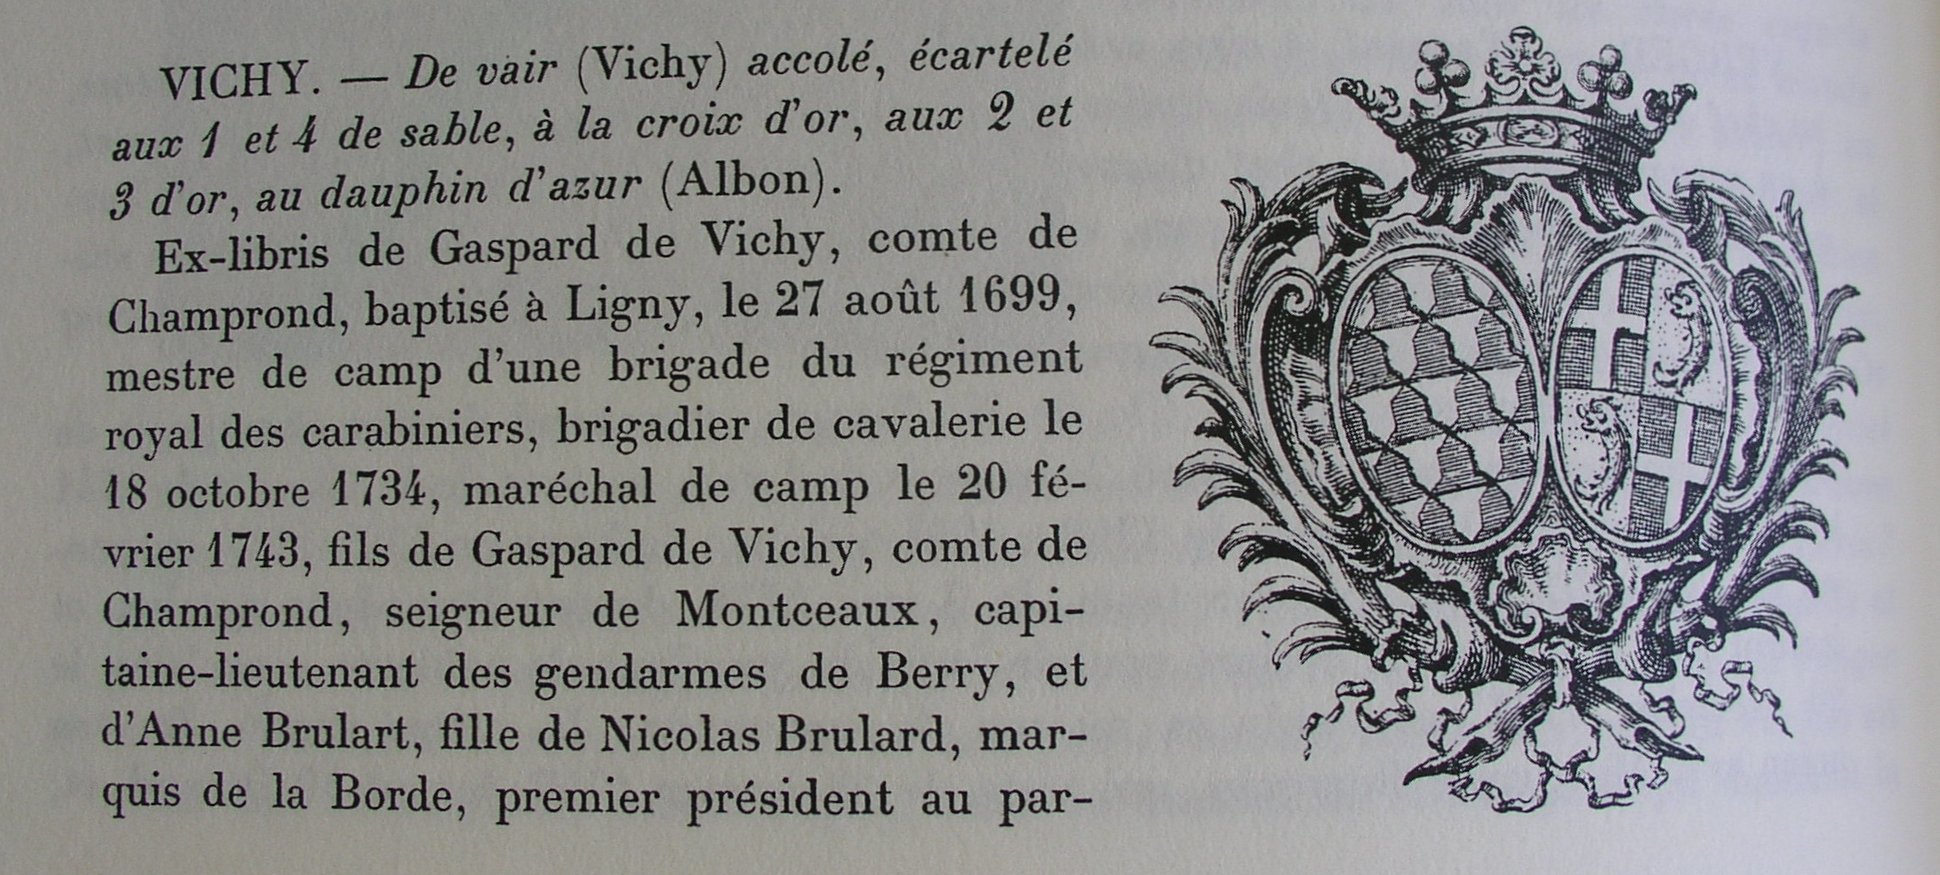 Ex-libris de Gaspard de Vichy